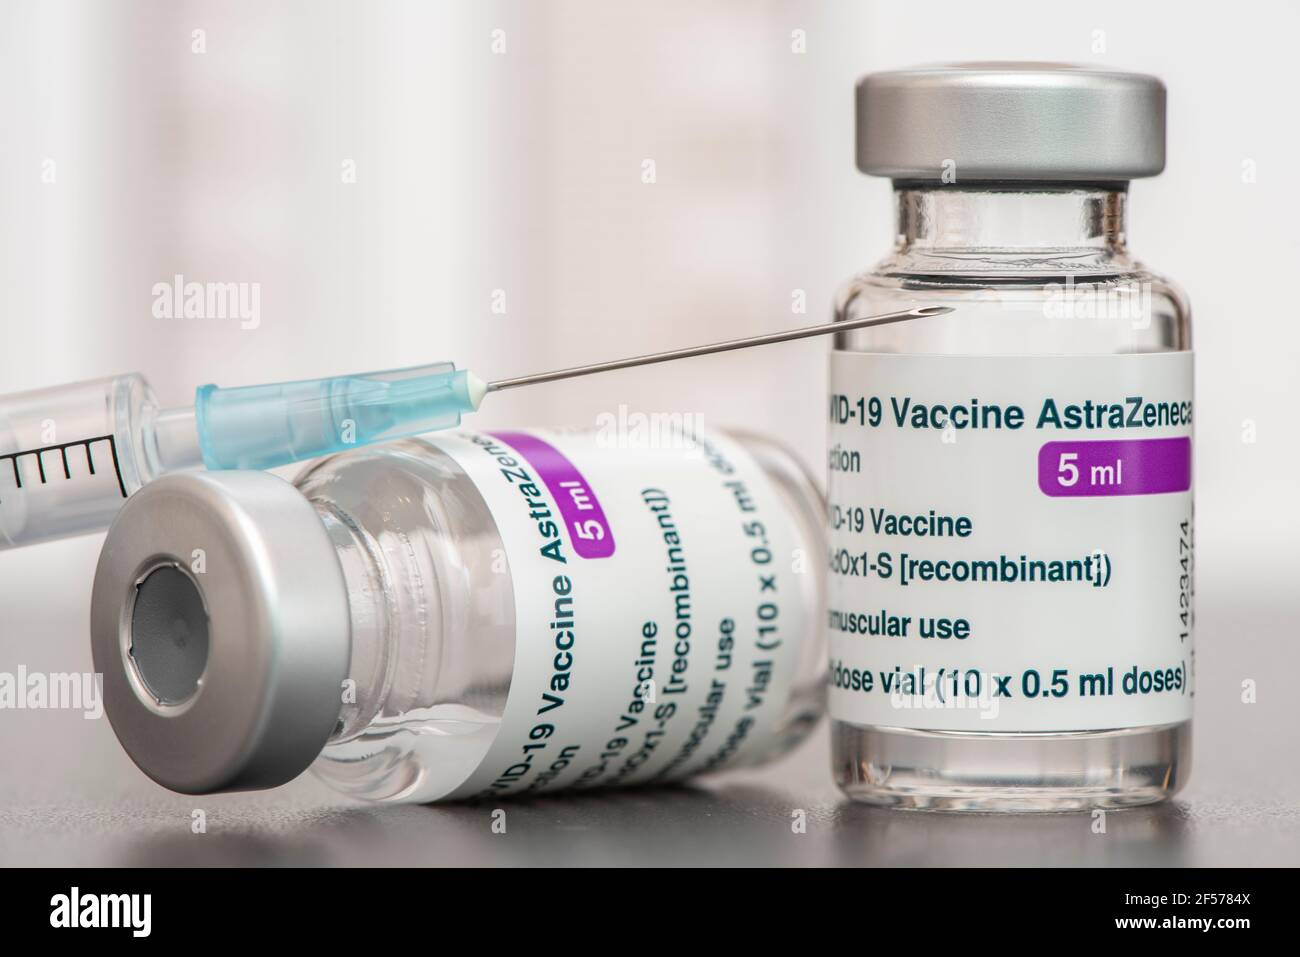 Original Impfampullen mit Impfstoff gegen Covid-19 Pandemie Foto Stock